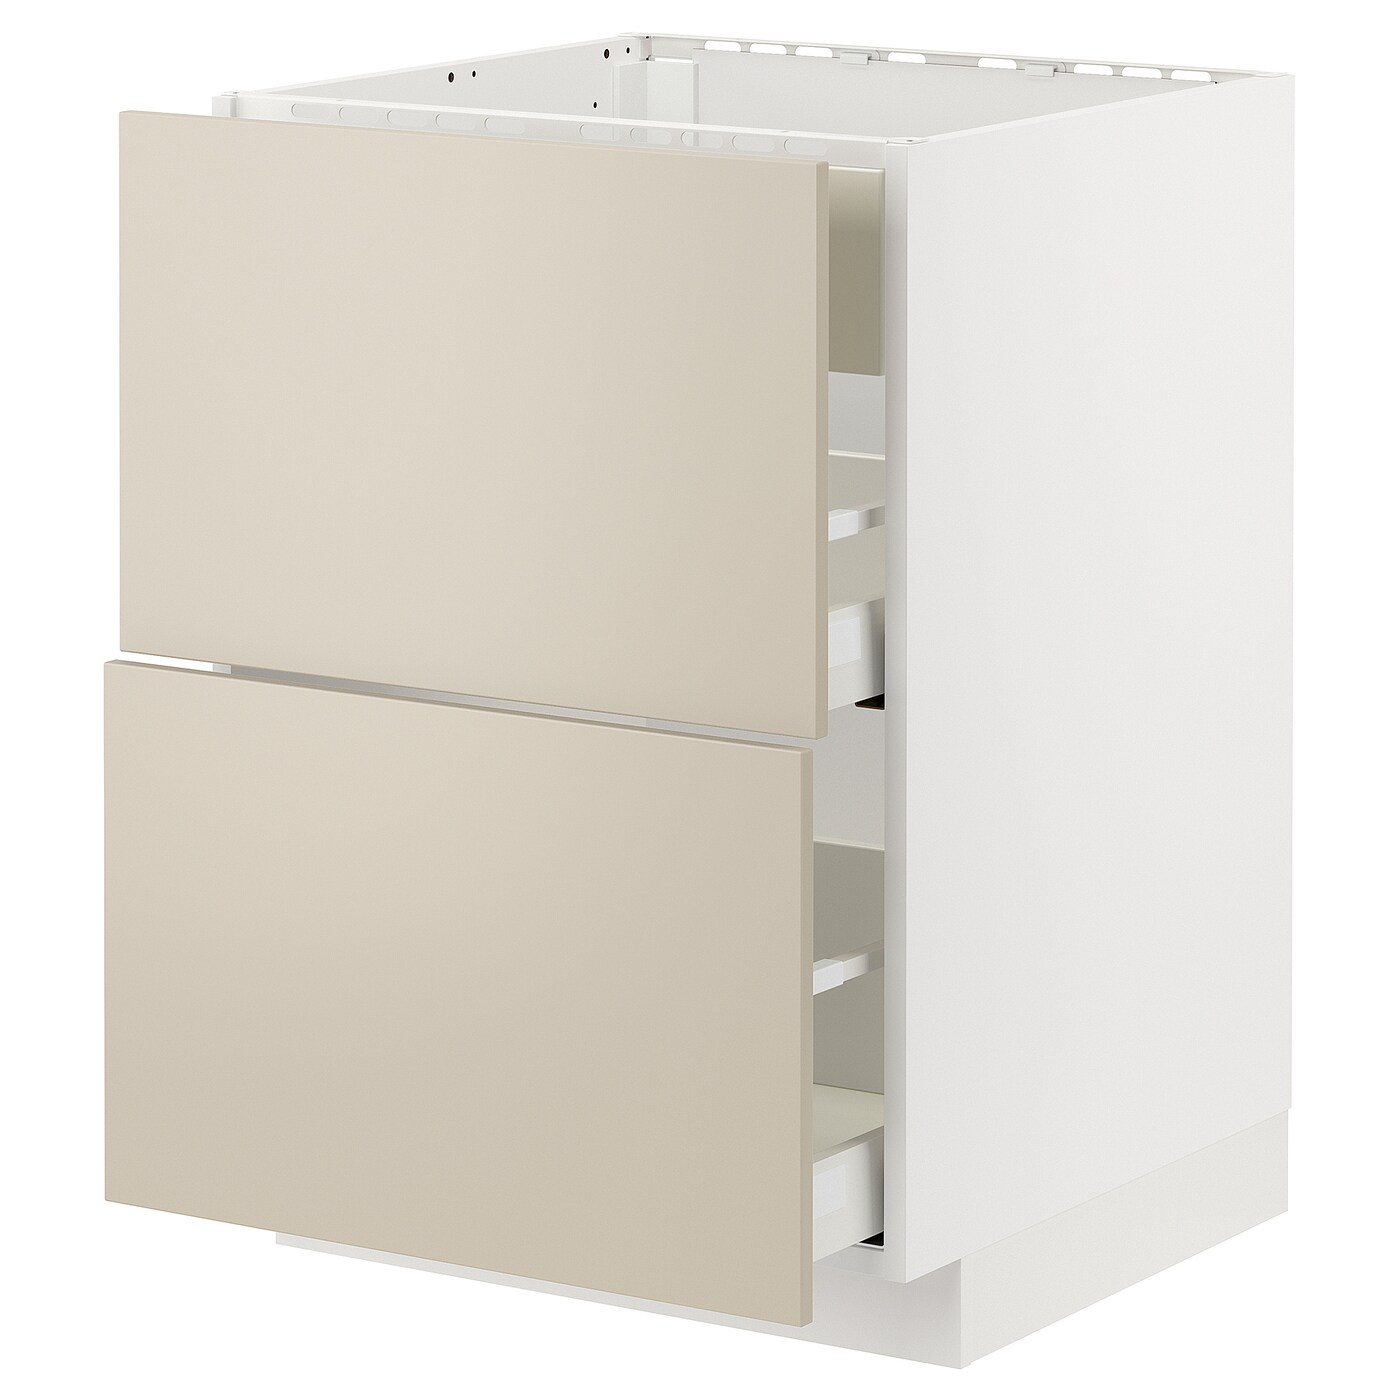 Напольный кухонный шкаф - IKEA METOD MAXIMERA, 88x62x60см, белый/бежевый, МЕТОД МАКСИМЕРА ИКЕА